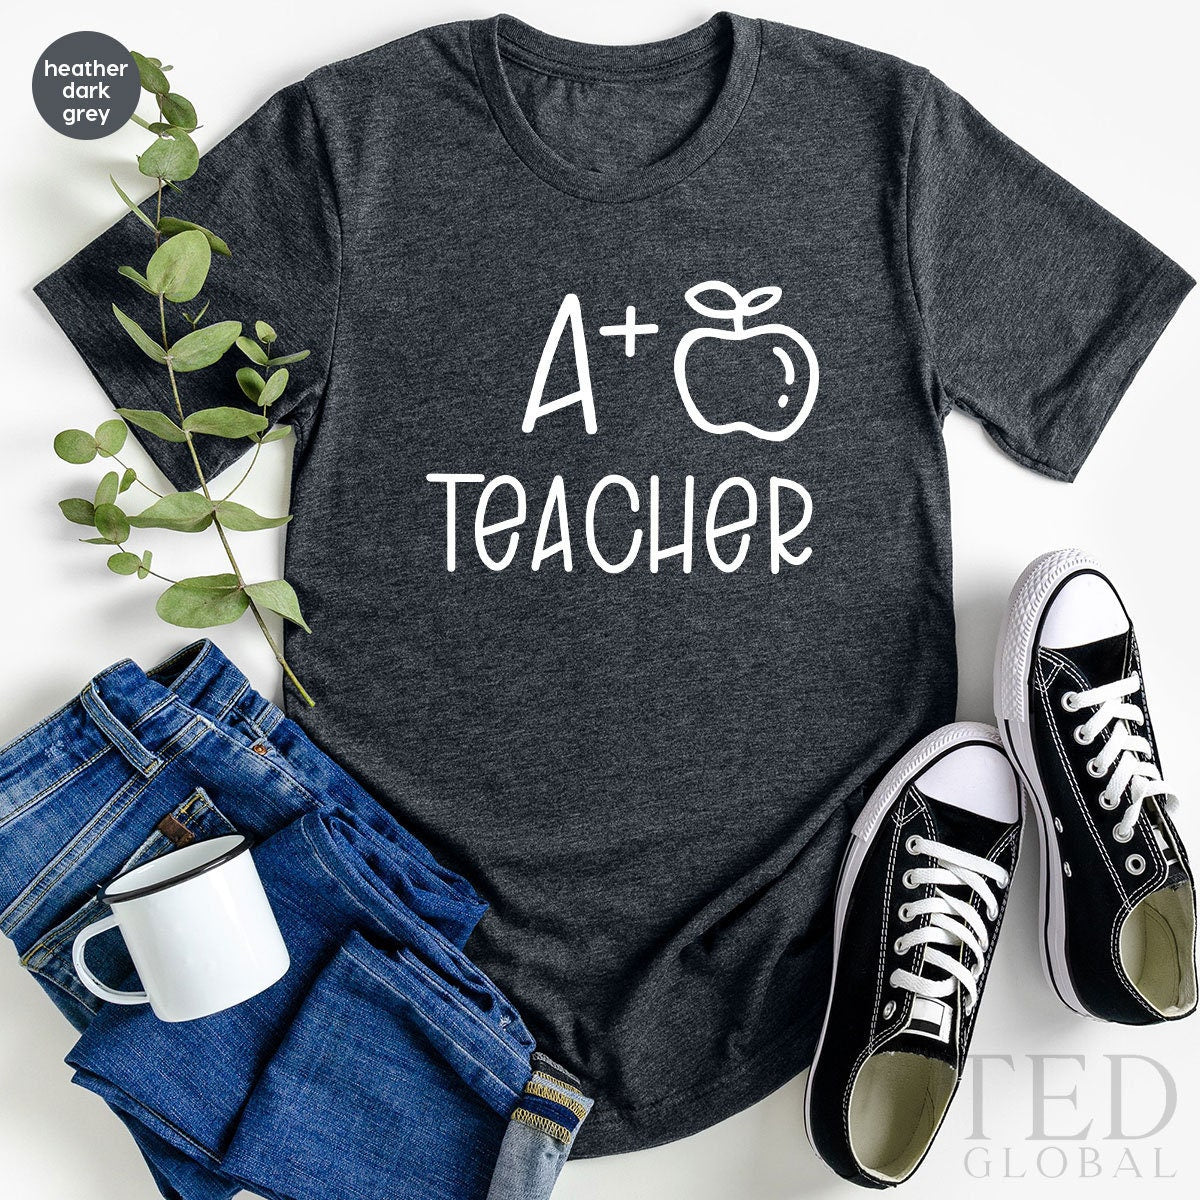 Teacher Shirt, Teacher Gifts, A Plus Teacher Shirt, Teacher T Shirt, Kindergarten Teacher Shirt, Teacher Graduation Gift, Gift For Teacher - Fastdeliverytees.com